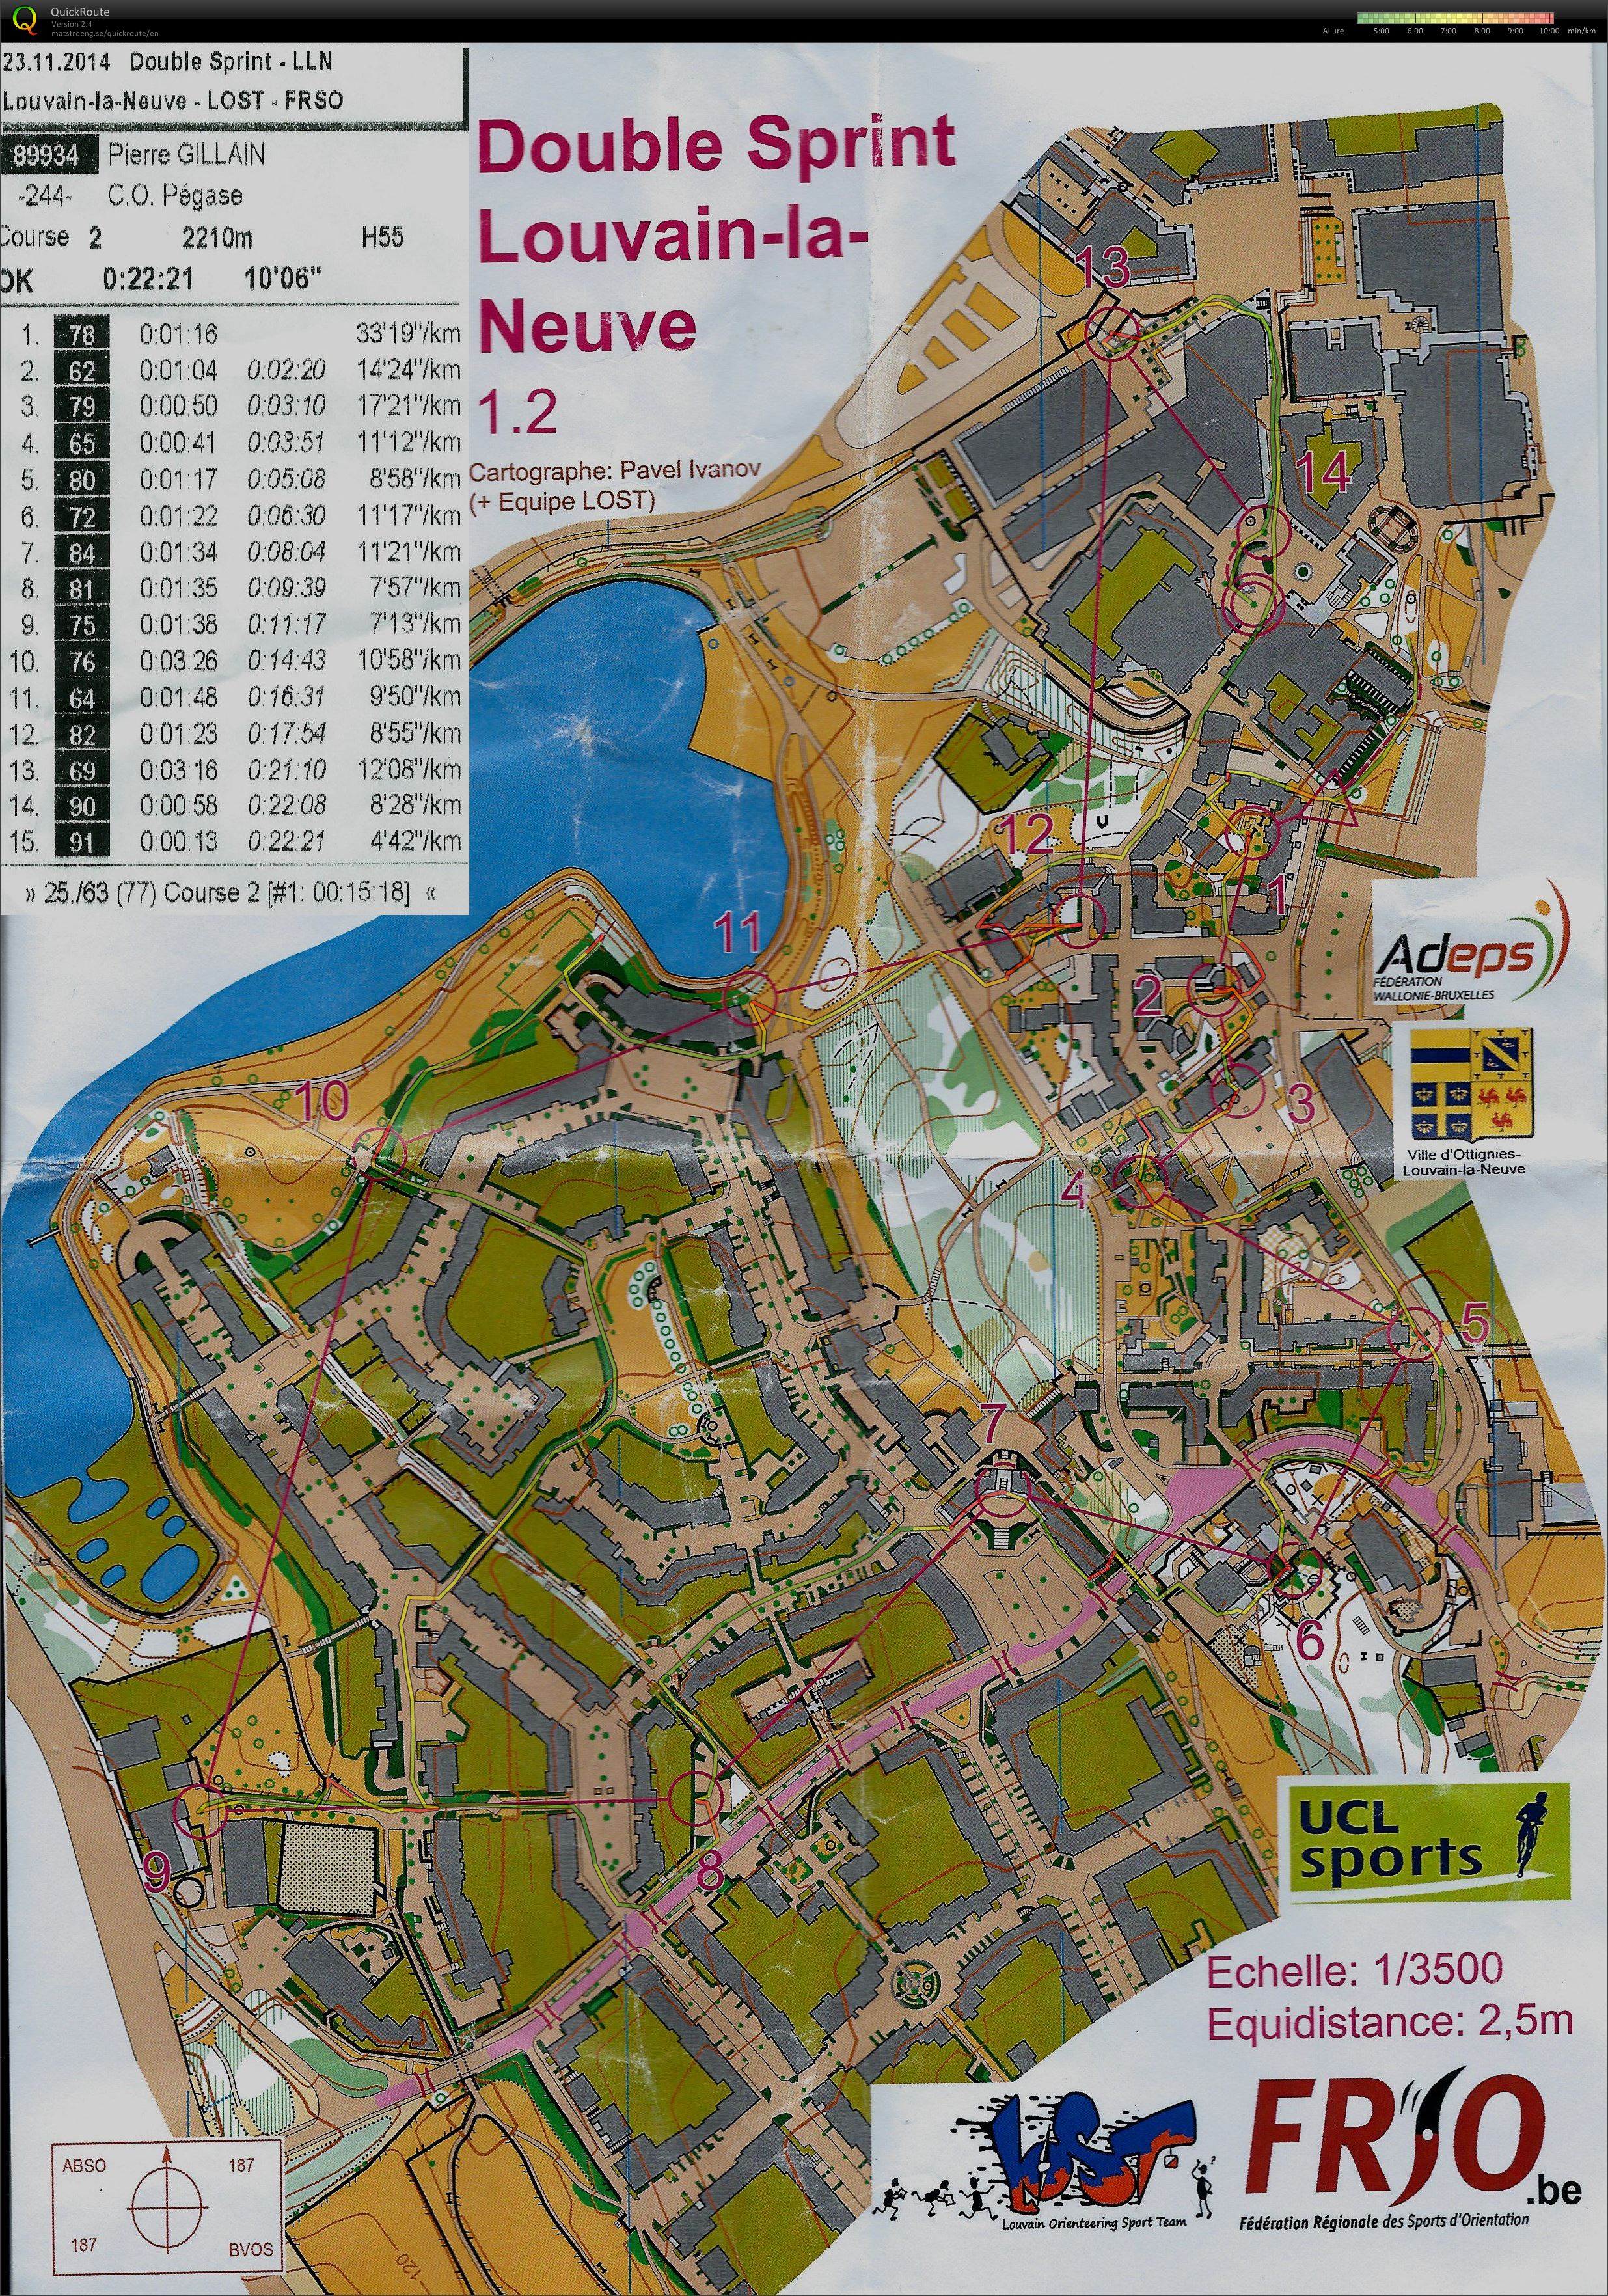 Double sprint Louvain-la-Neuve 1 (2014-11-23)